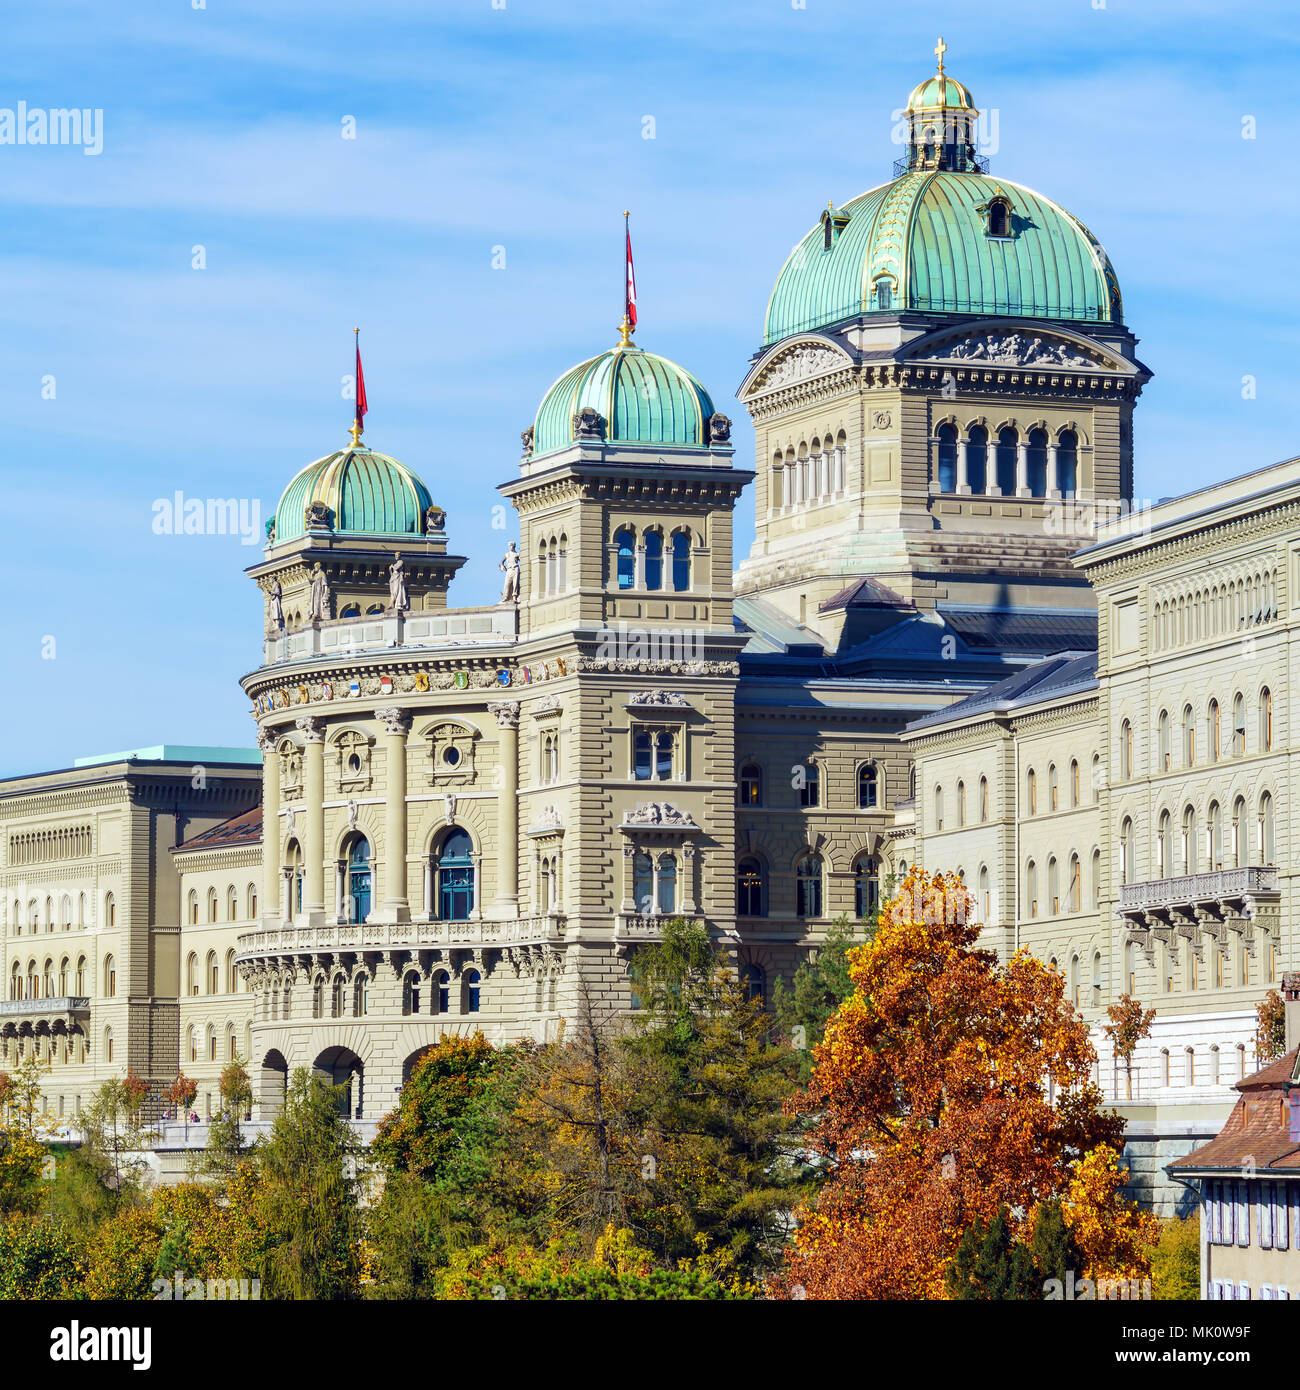 Die Bundesregierung Palace 1902 Dem Parlament Gebaude Der Schweizerischen Bundesversammlung Und Bundesrat Bern Schweiz Stockfotografie Alamy